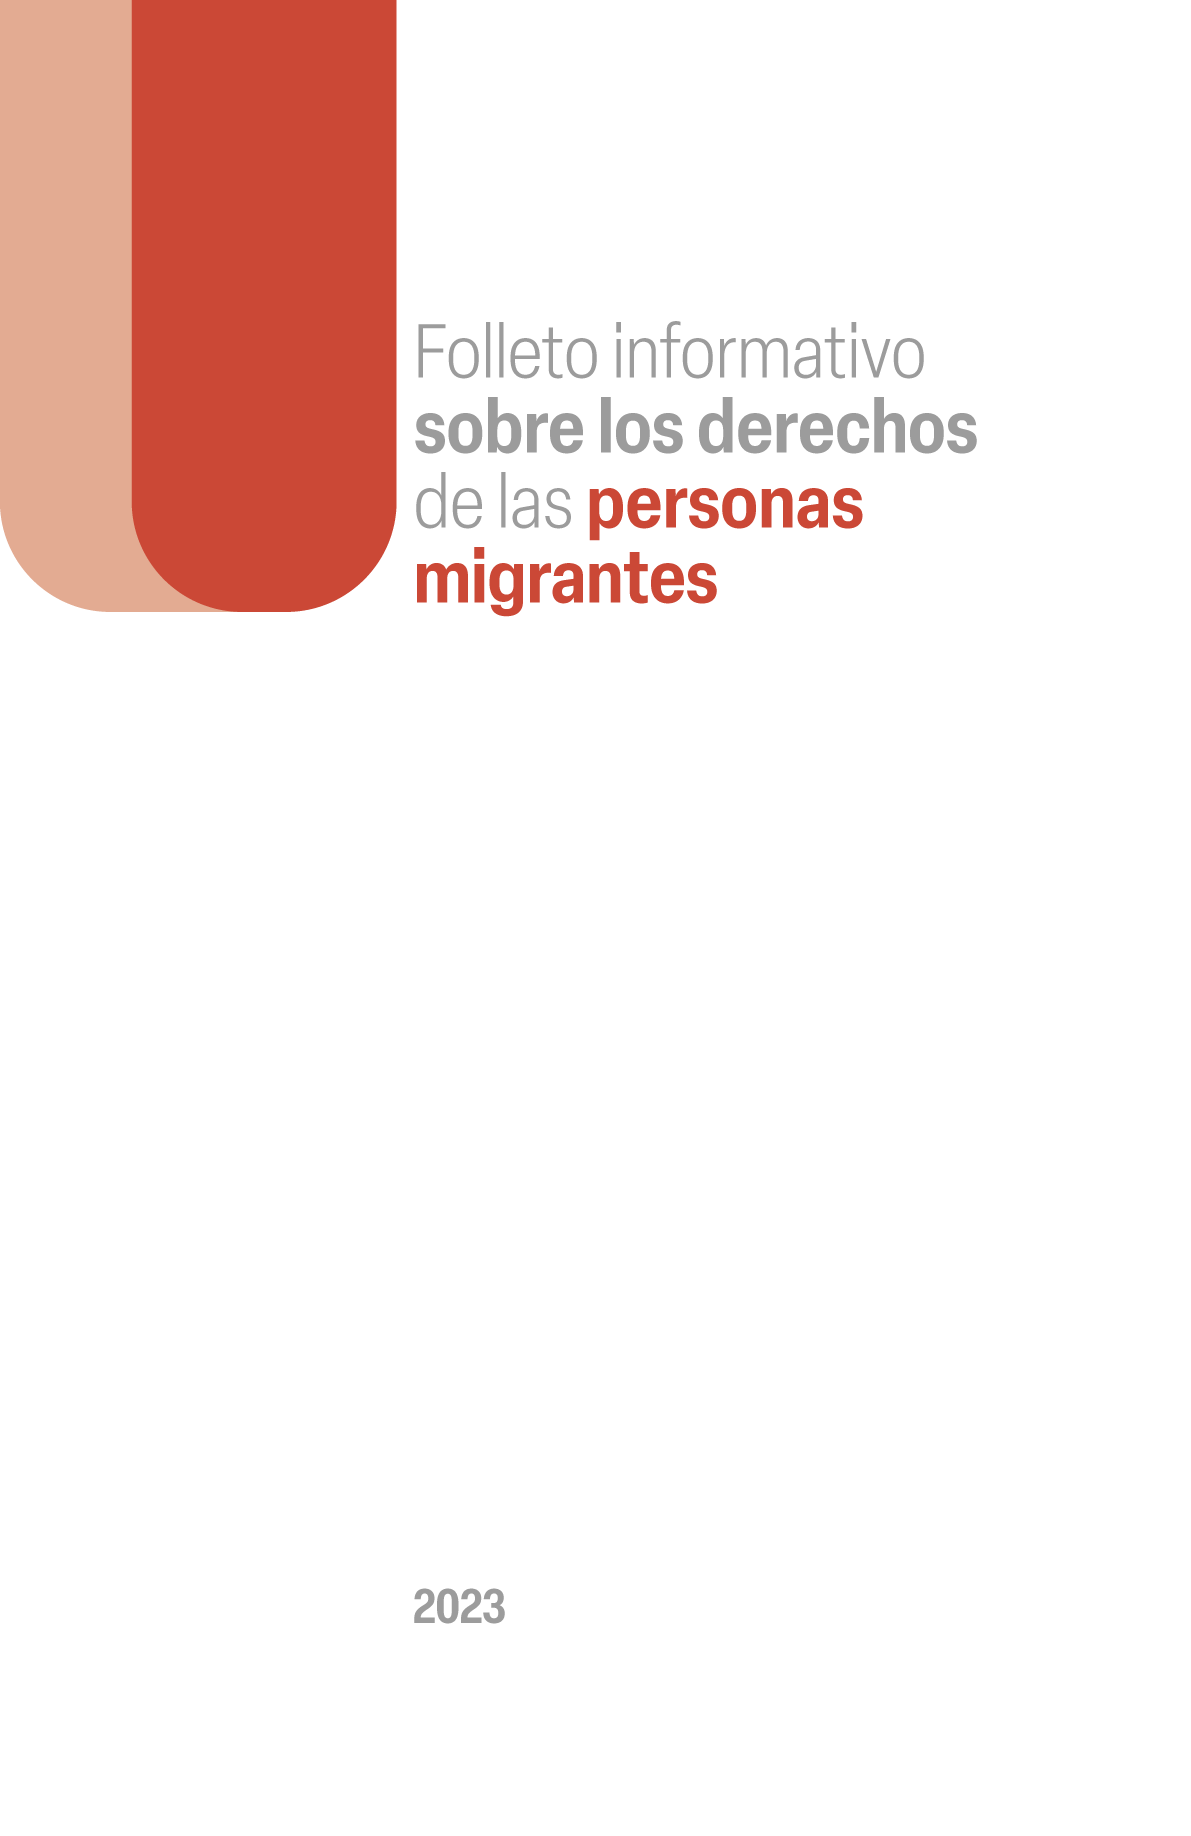 Folleto informativo sobre los derechos de las personas migrantes